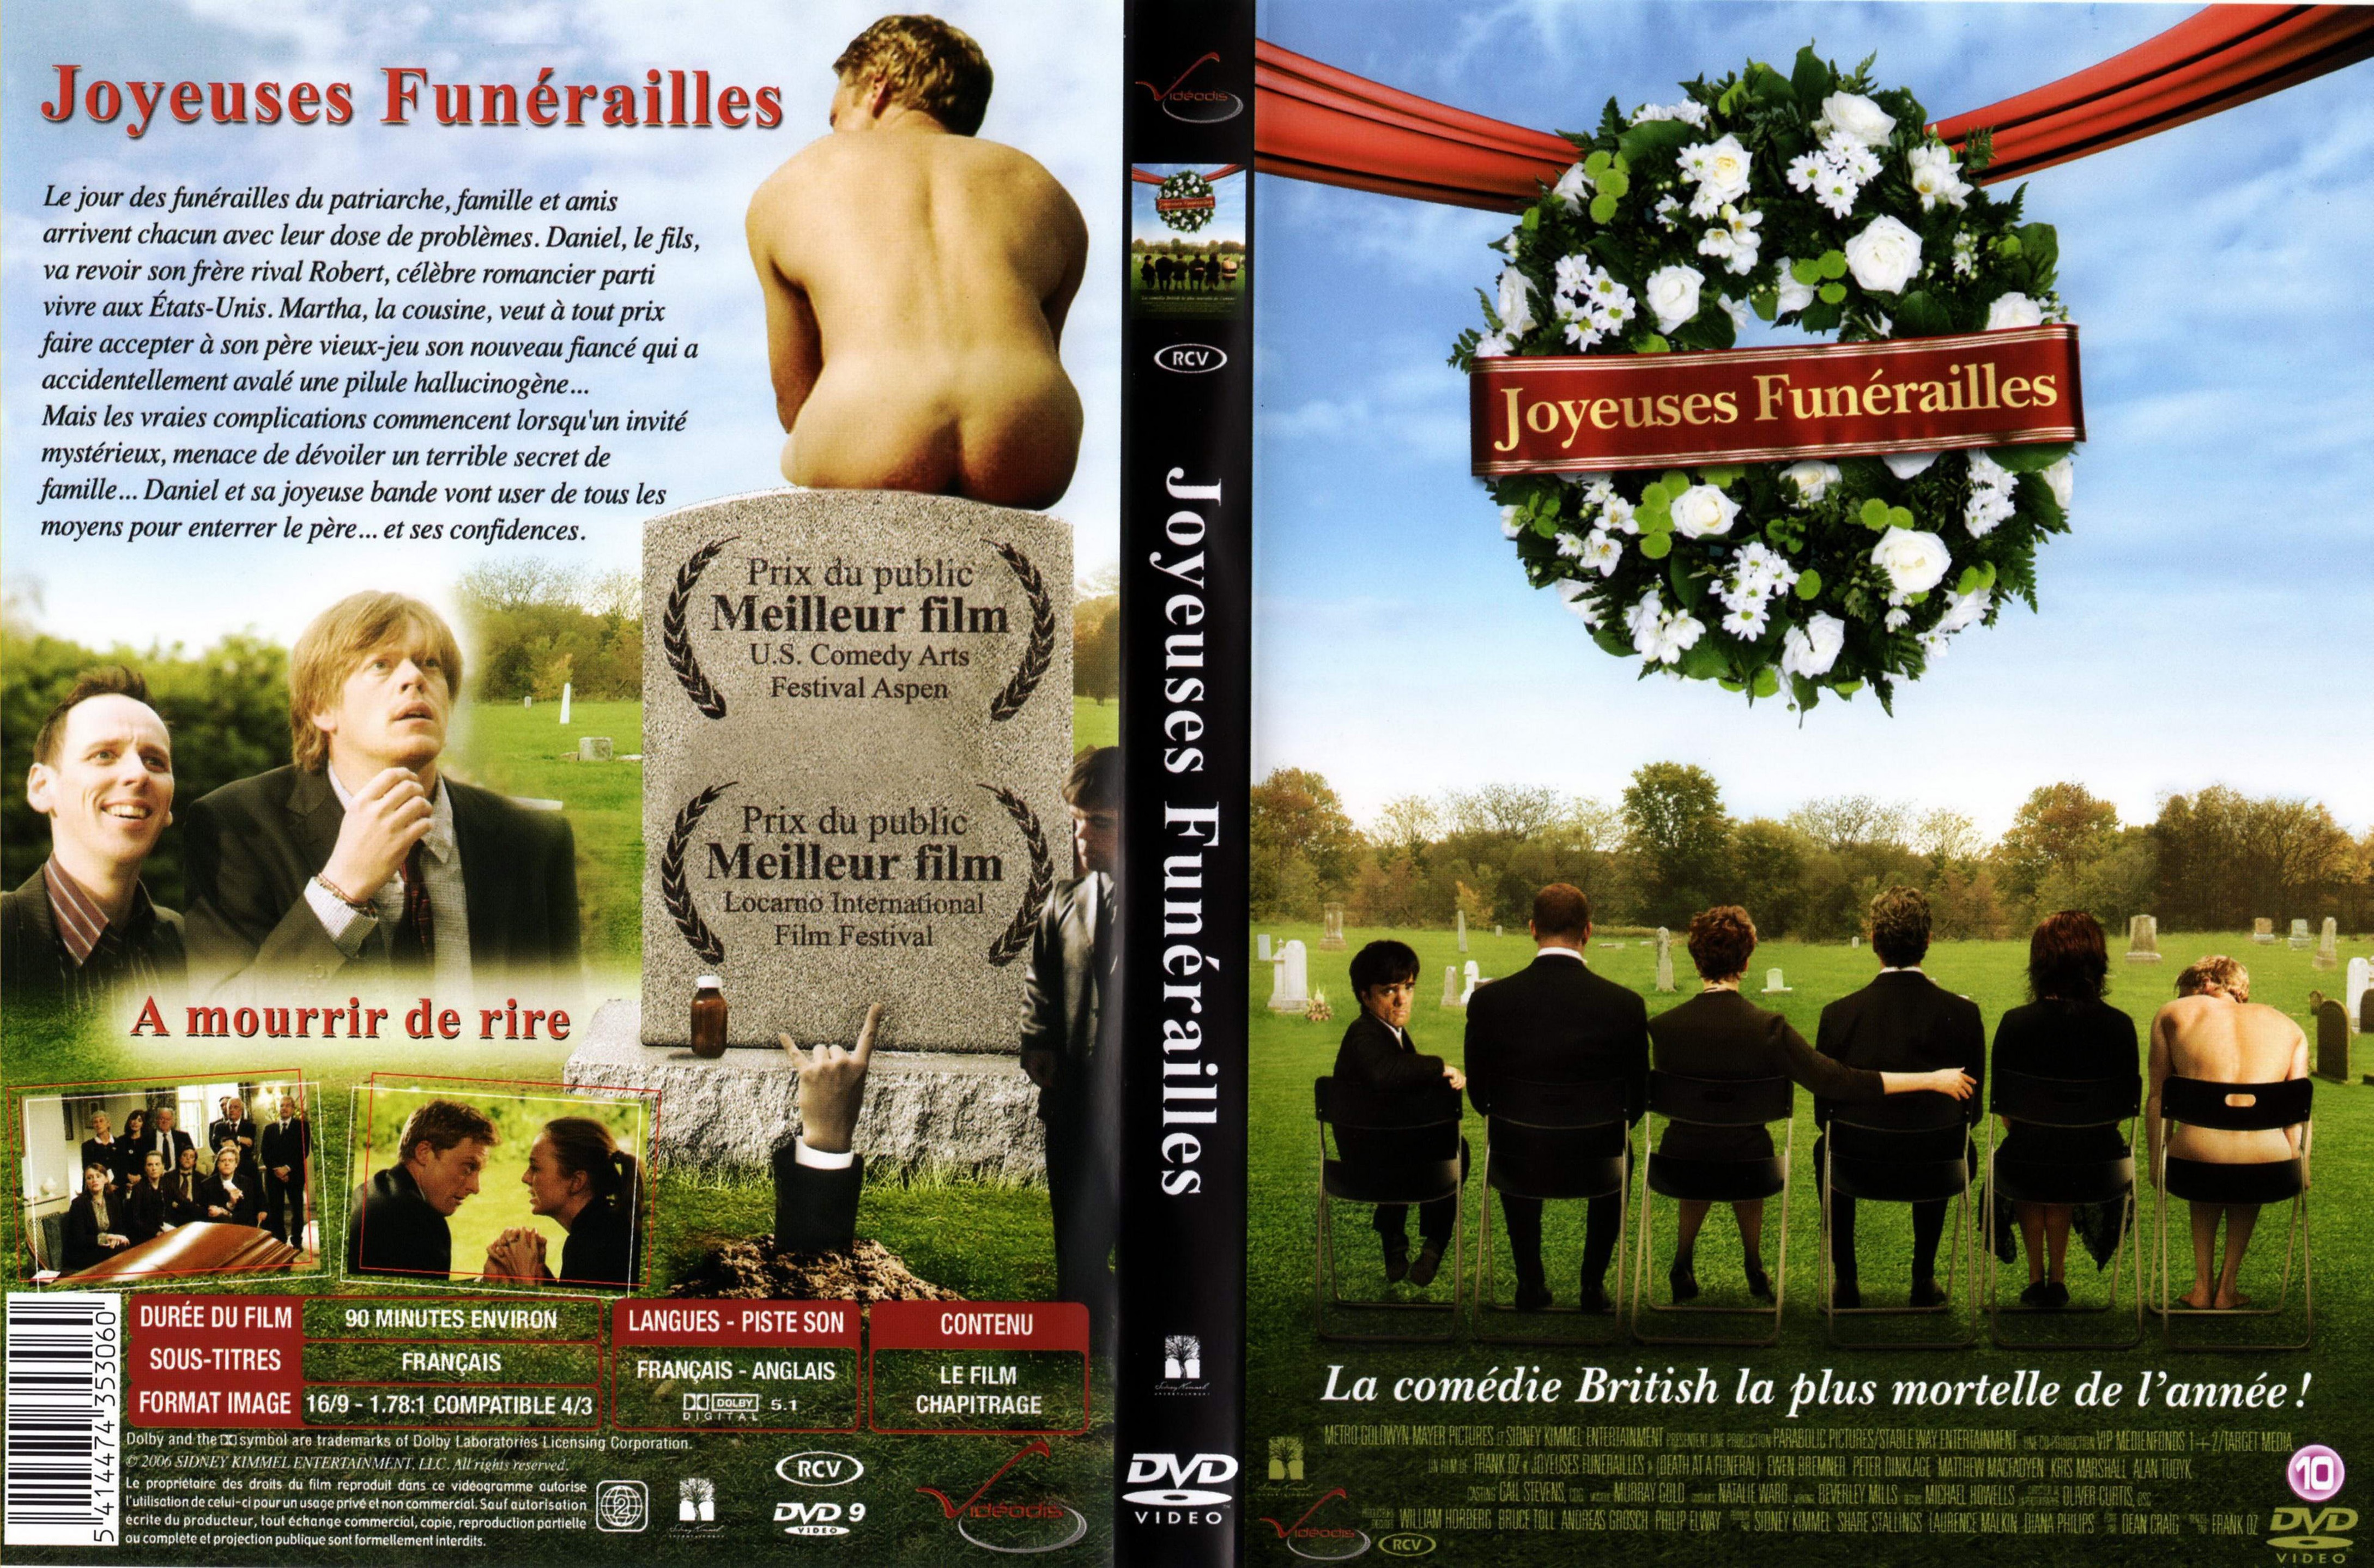 Jaquette DVD Joyeuses funerailles v2